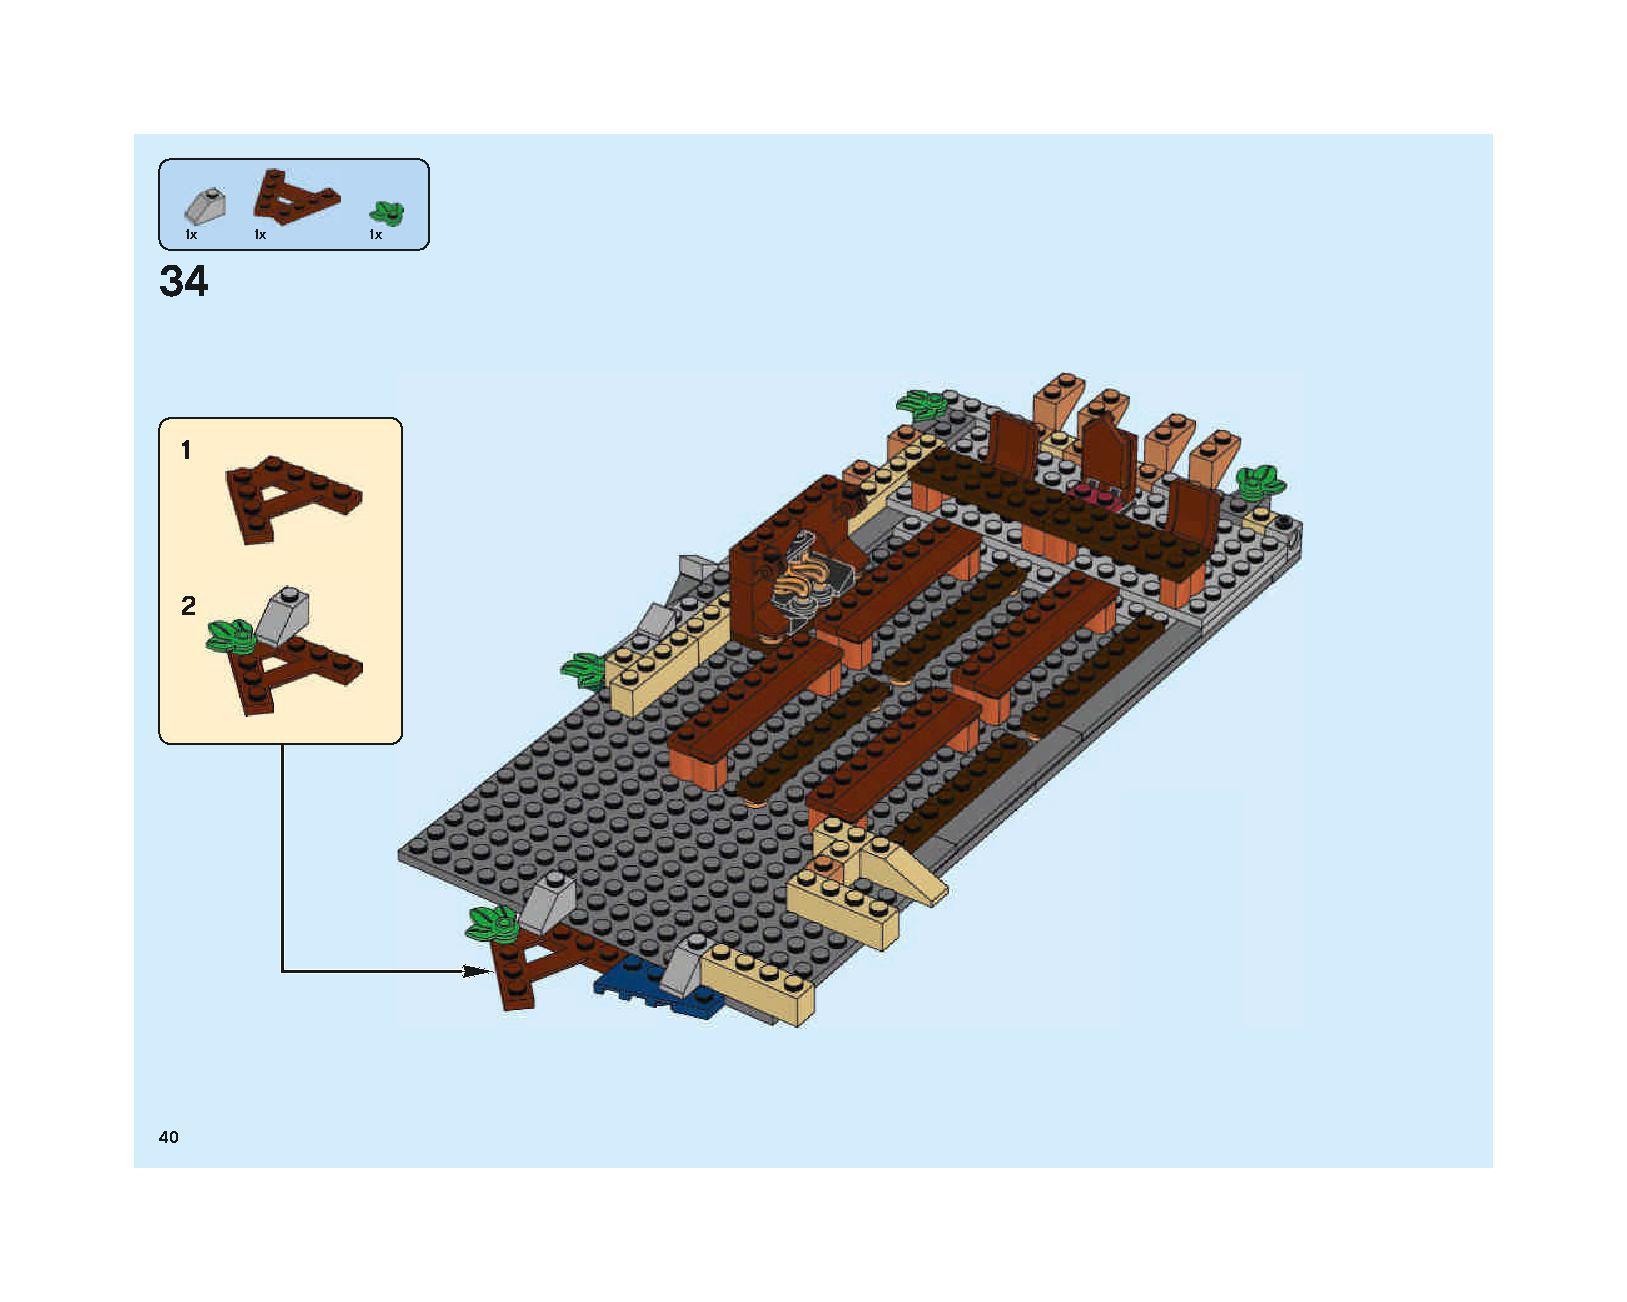 ホグワーツの大広間 75954 レゴの商品情報 レゴの説明書・組立方法 40 page